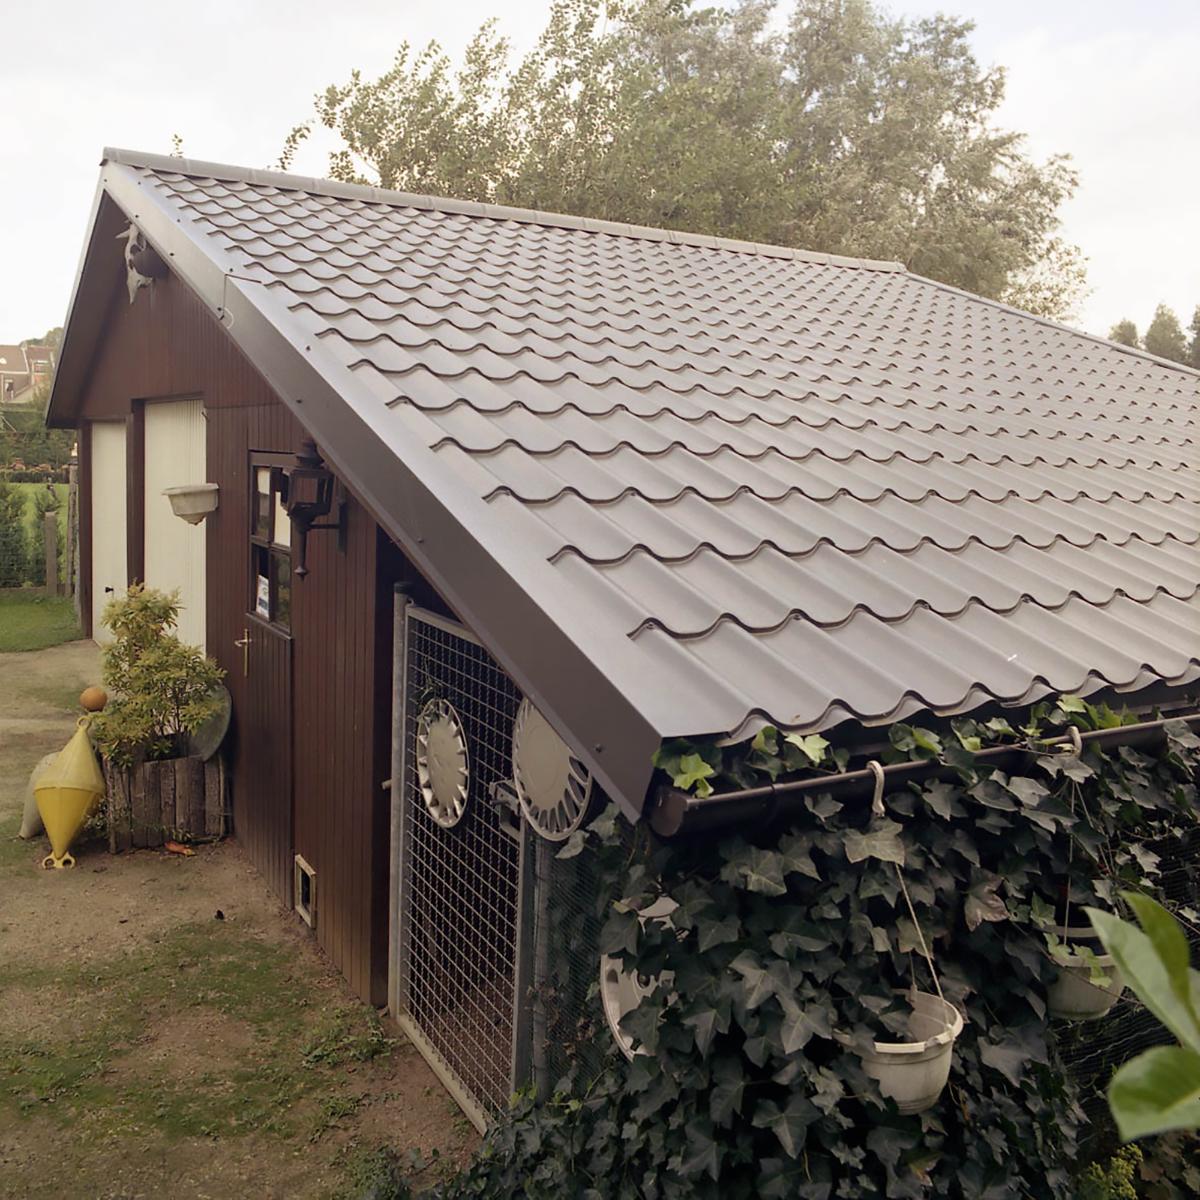 JI 24-183-1100 - Roof Tiles - Garden shed - Top view